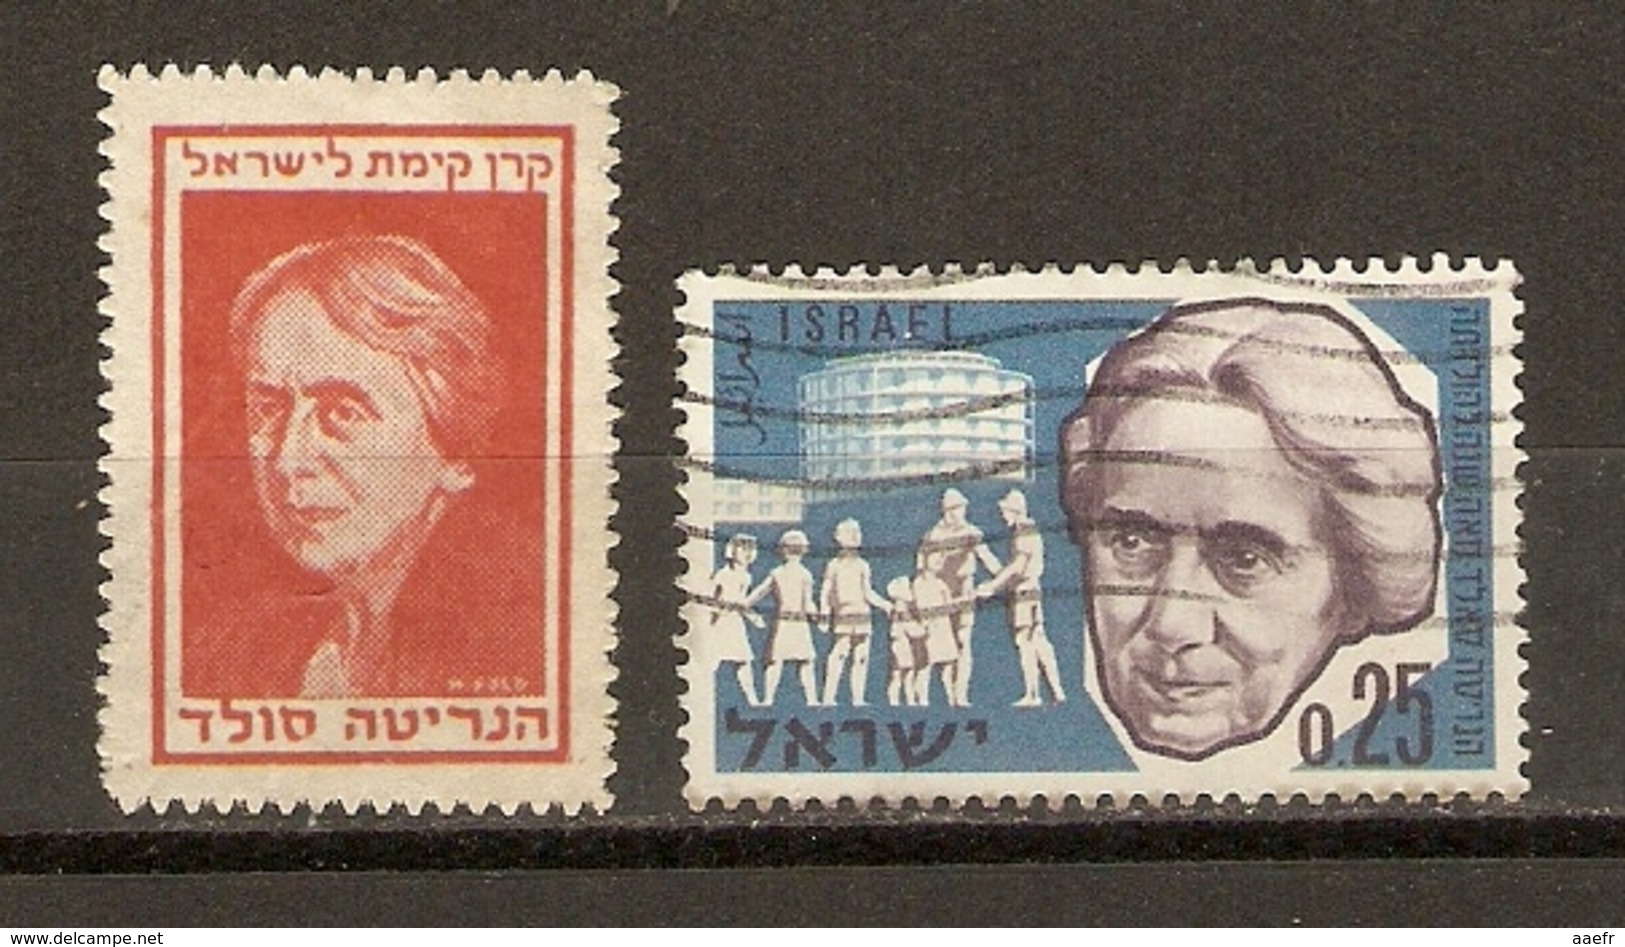 Israel, Etats-Unis - Vignette D' Henrietta Szold, Fondatrice De L' Hadassah - Education, Santé, Hôpital, Judaïsme - Erinnophilie